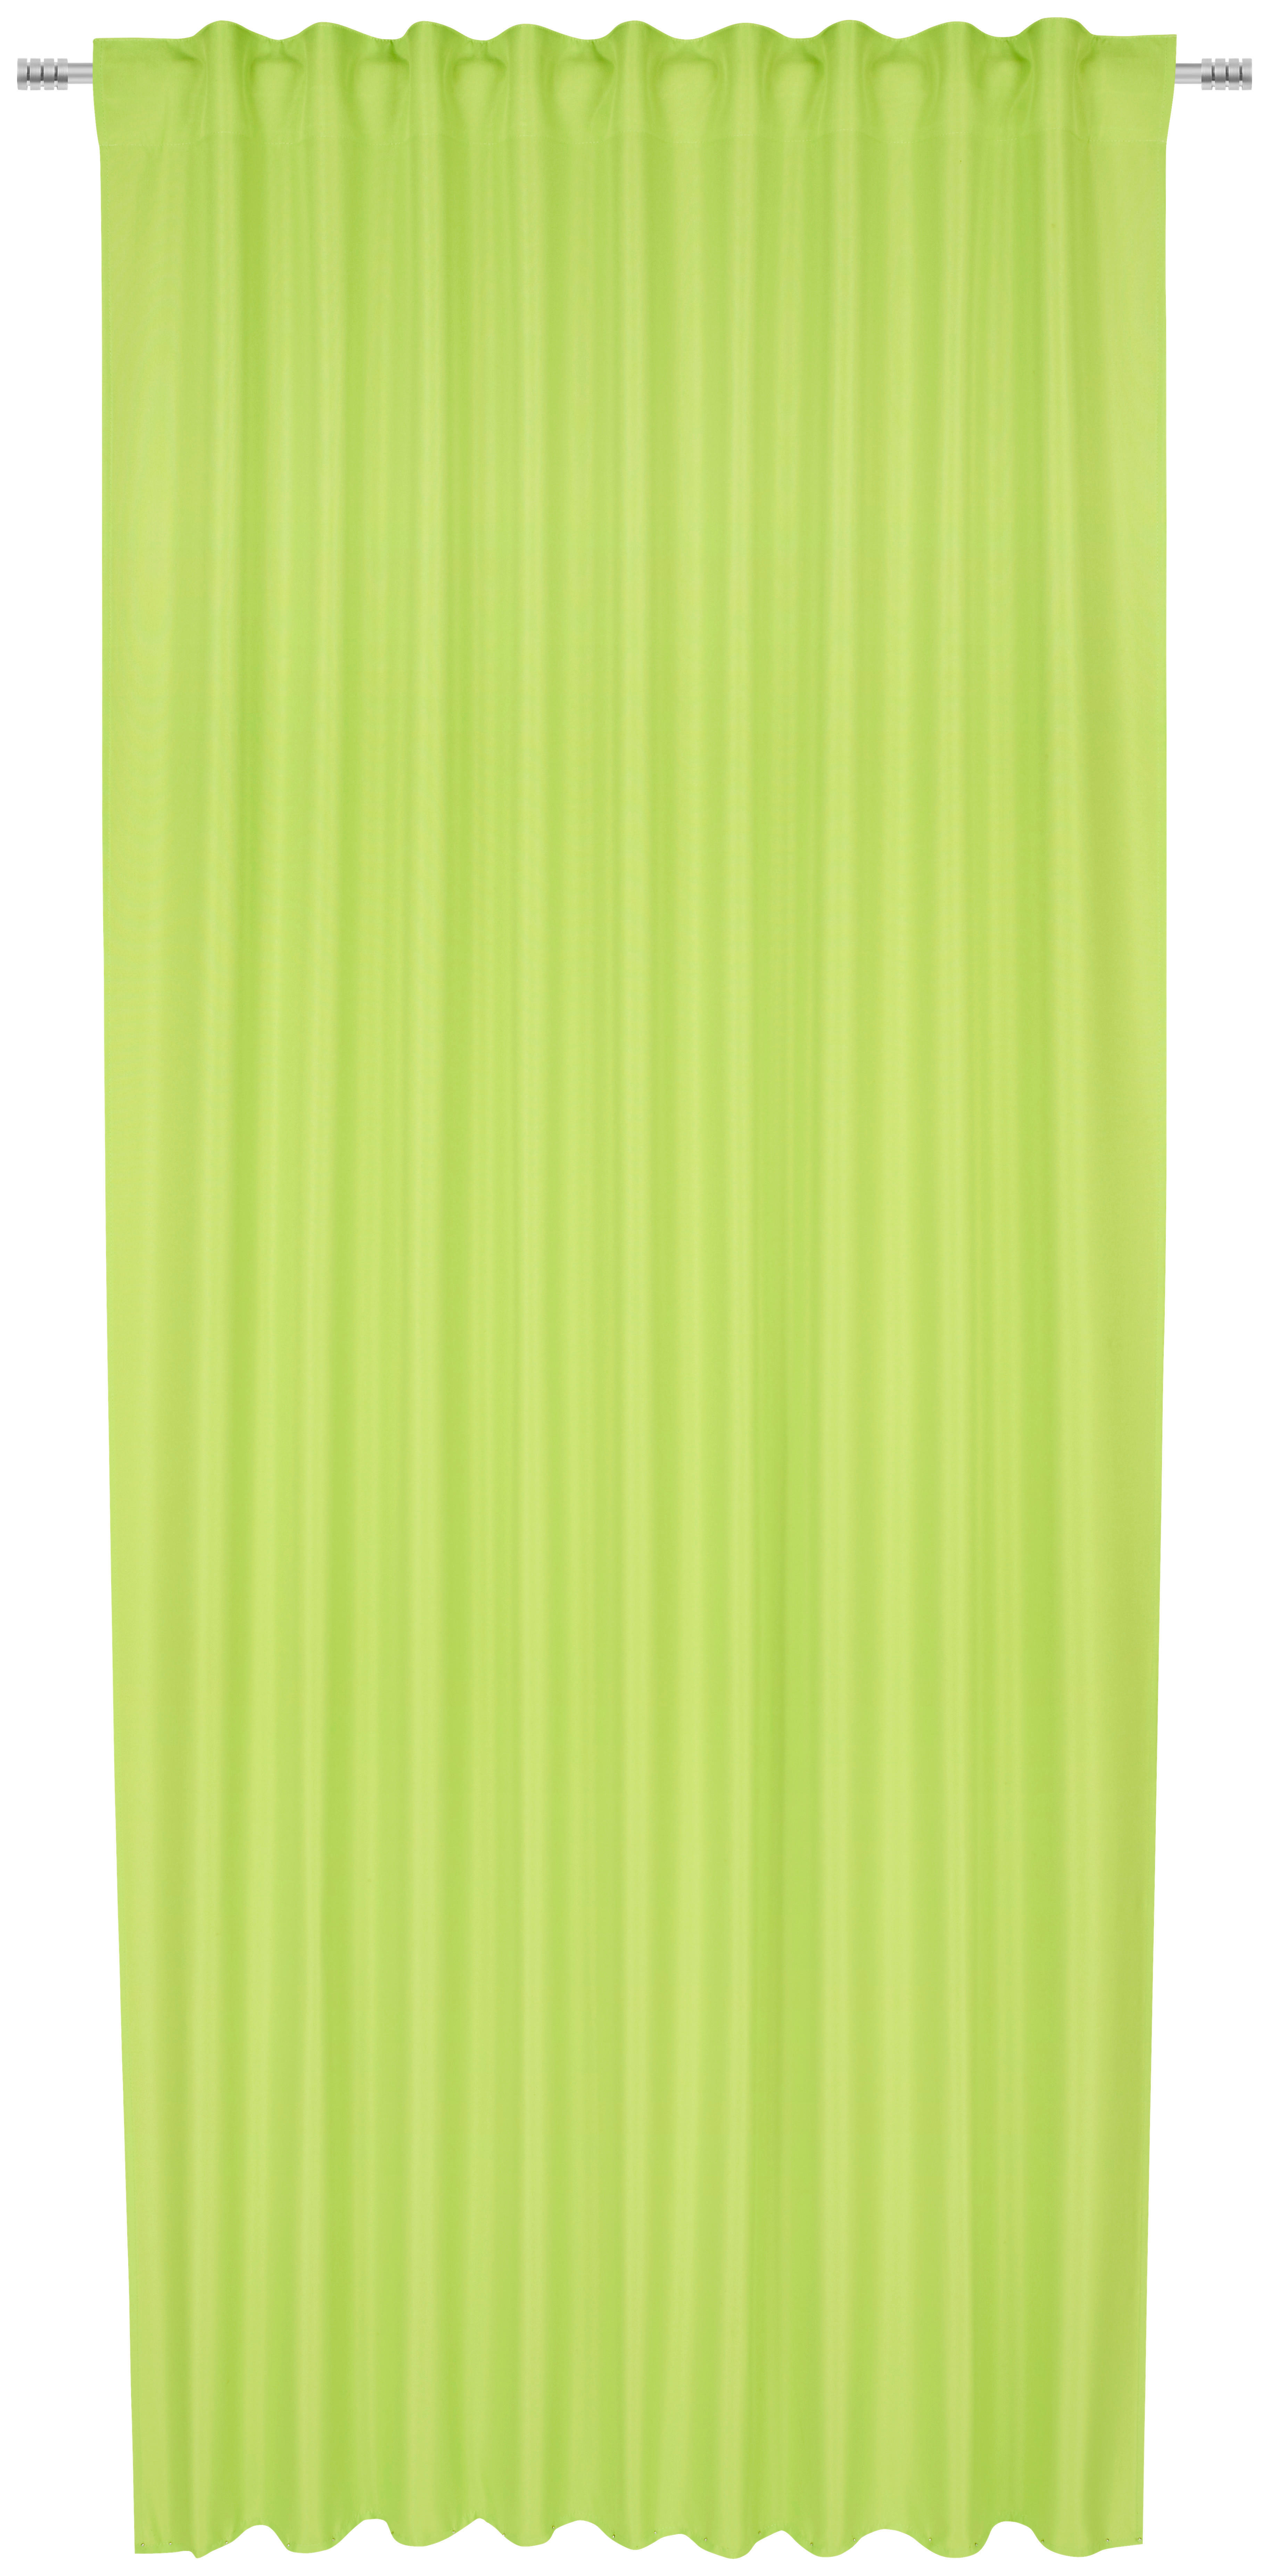 HOTOVÝ ZÁVĚS, neprůsvitné, 140/245 cm - zelená, Konvenční, textil (140/245cm) - Boxxx